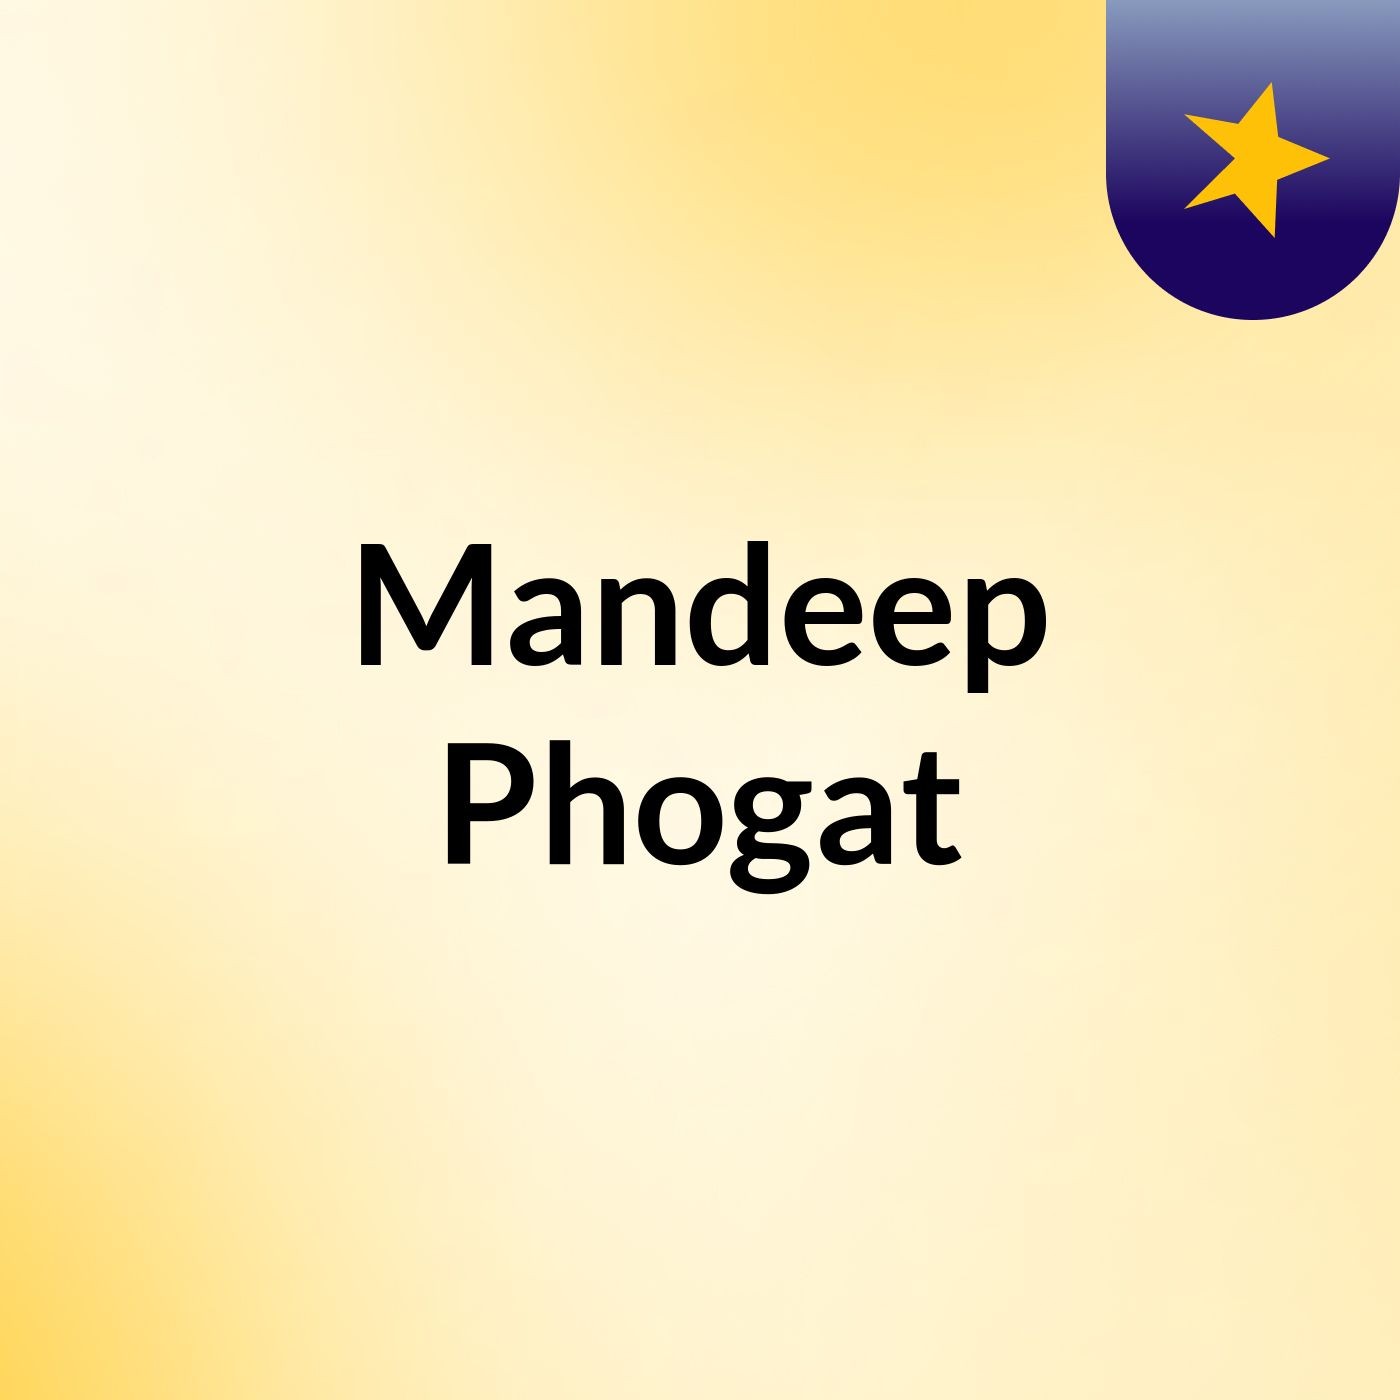 Mandeep Phogat